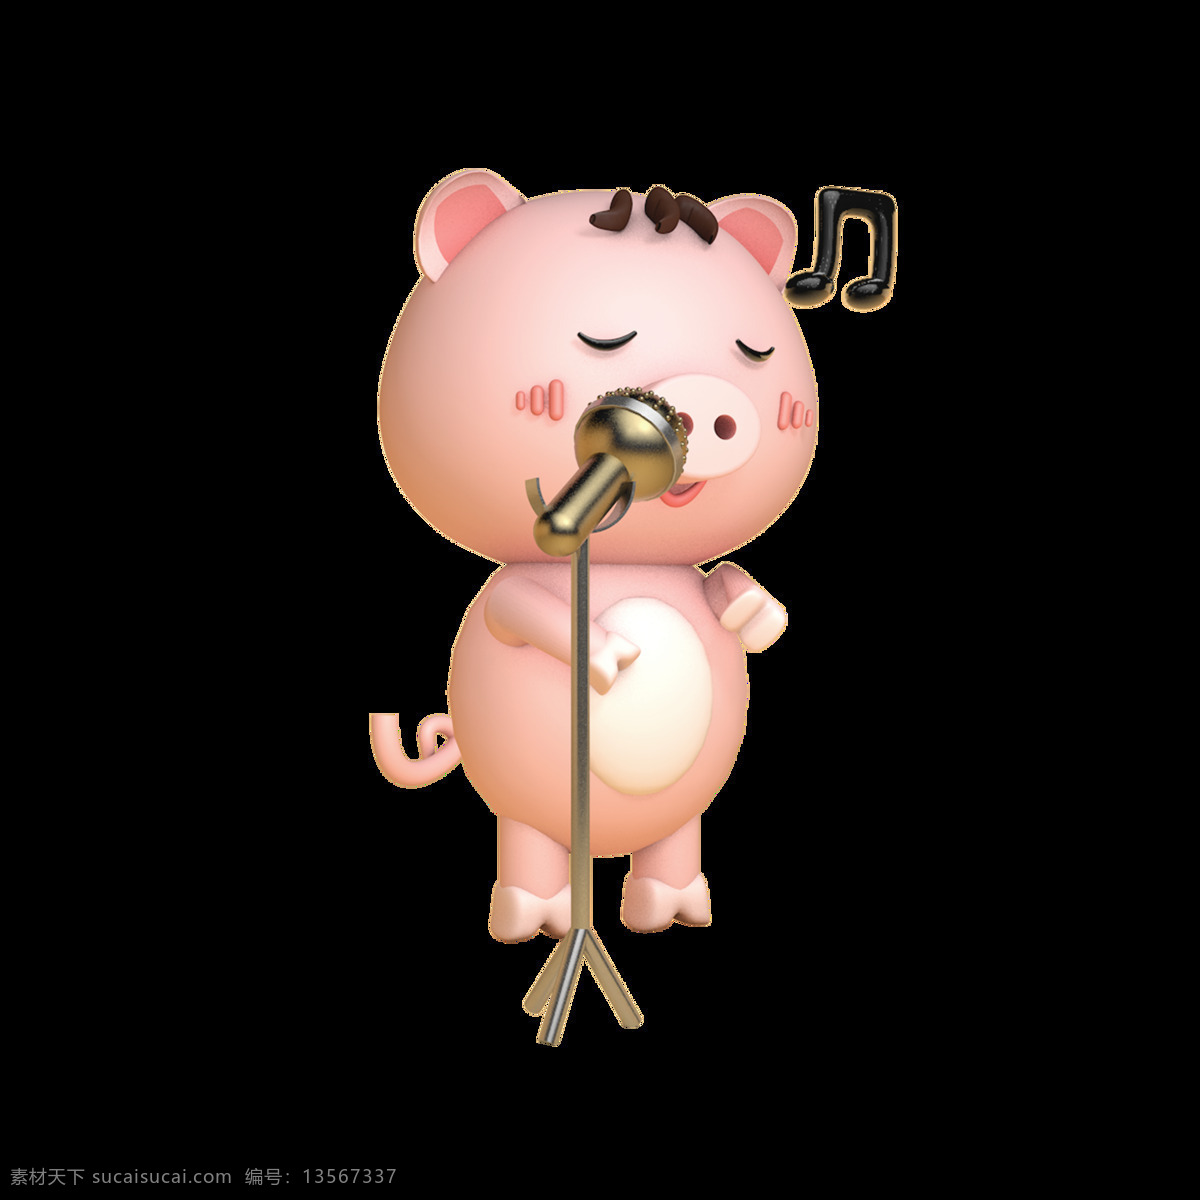 2019 生肖 猪 猪年 原创 商用 元素 音乐 音符 春节 动物 人物 过年 新年 粉嫩 q版 c4d 卡通 手绘 节日 公仔